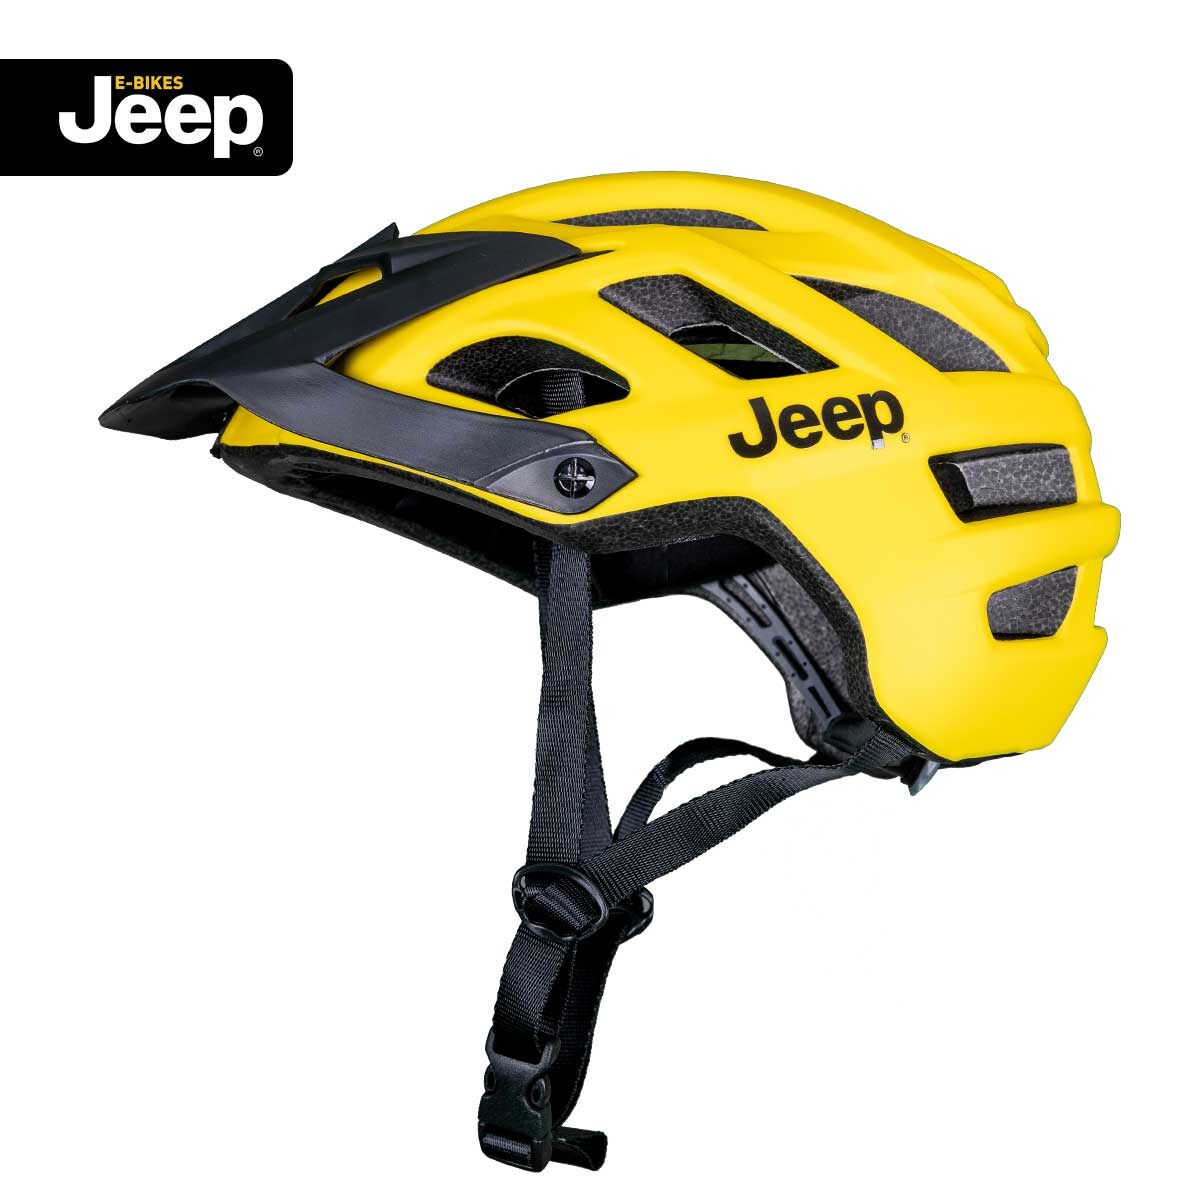 Jeep E-Bikes Helm Pro yellow S